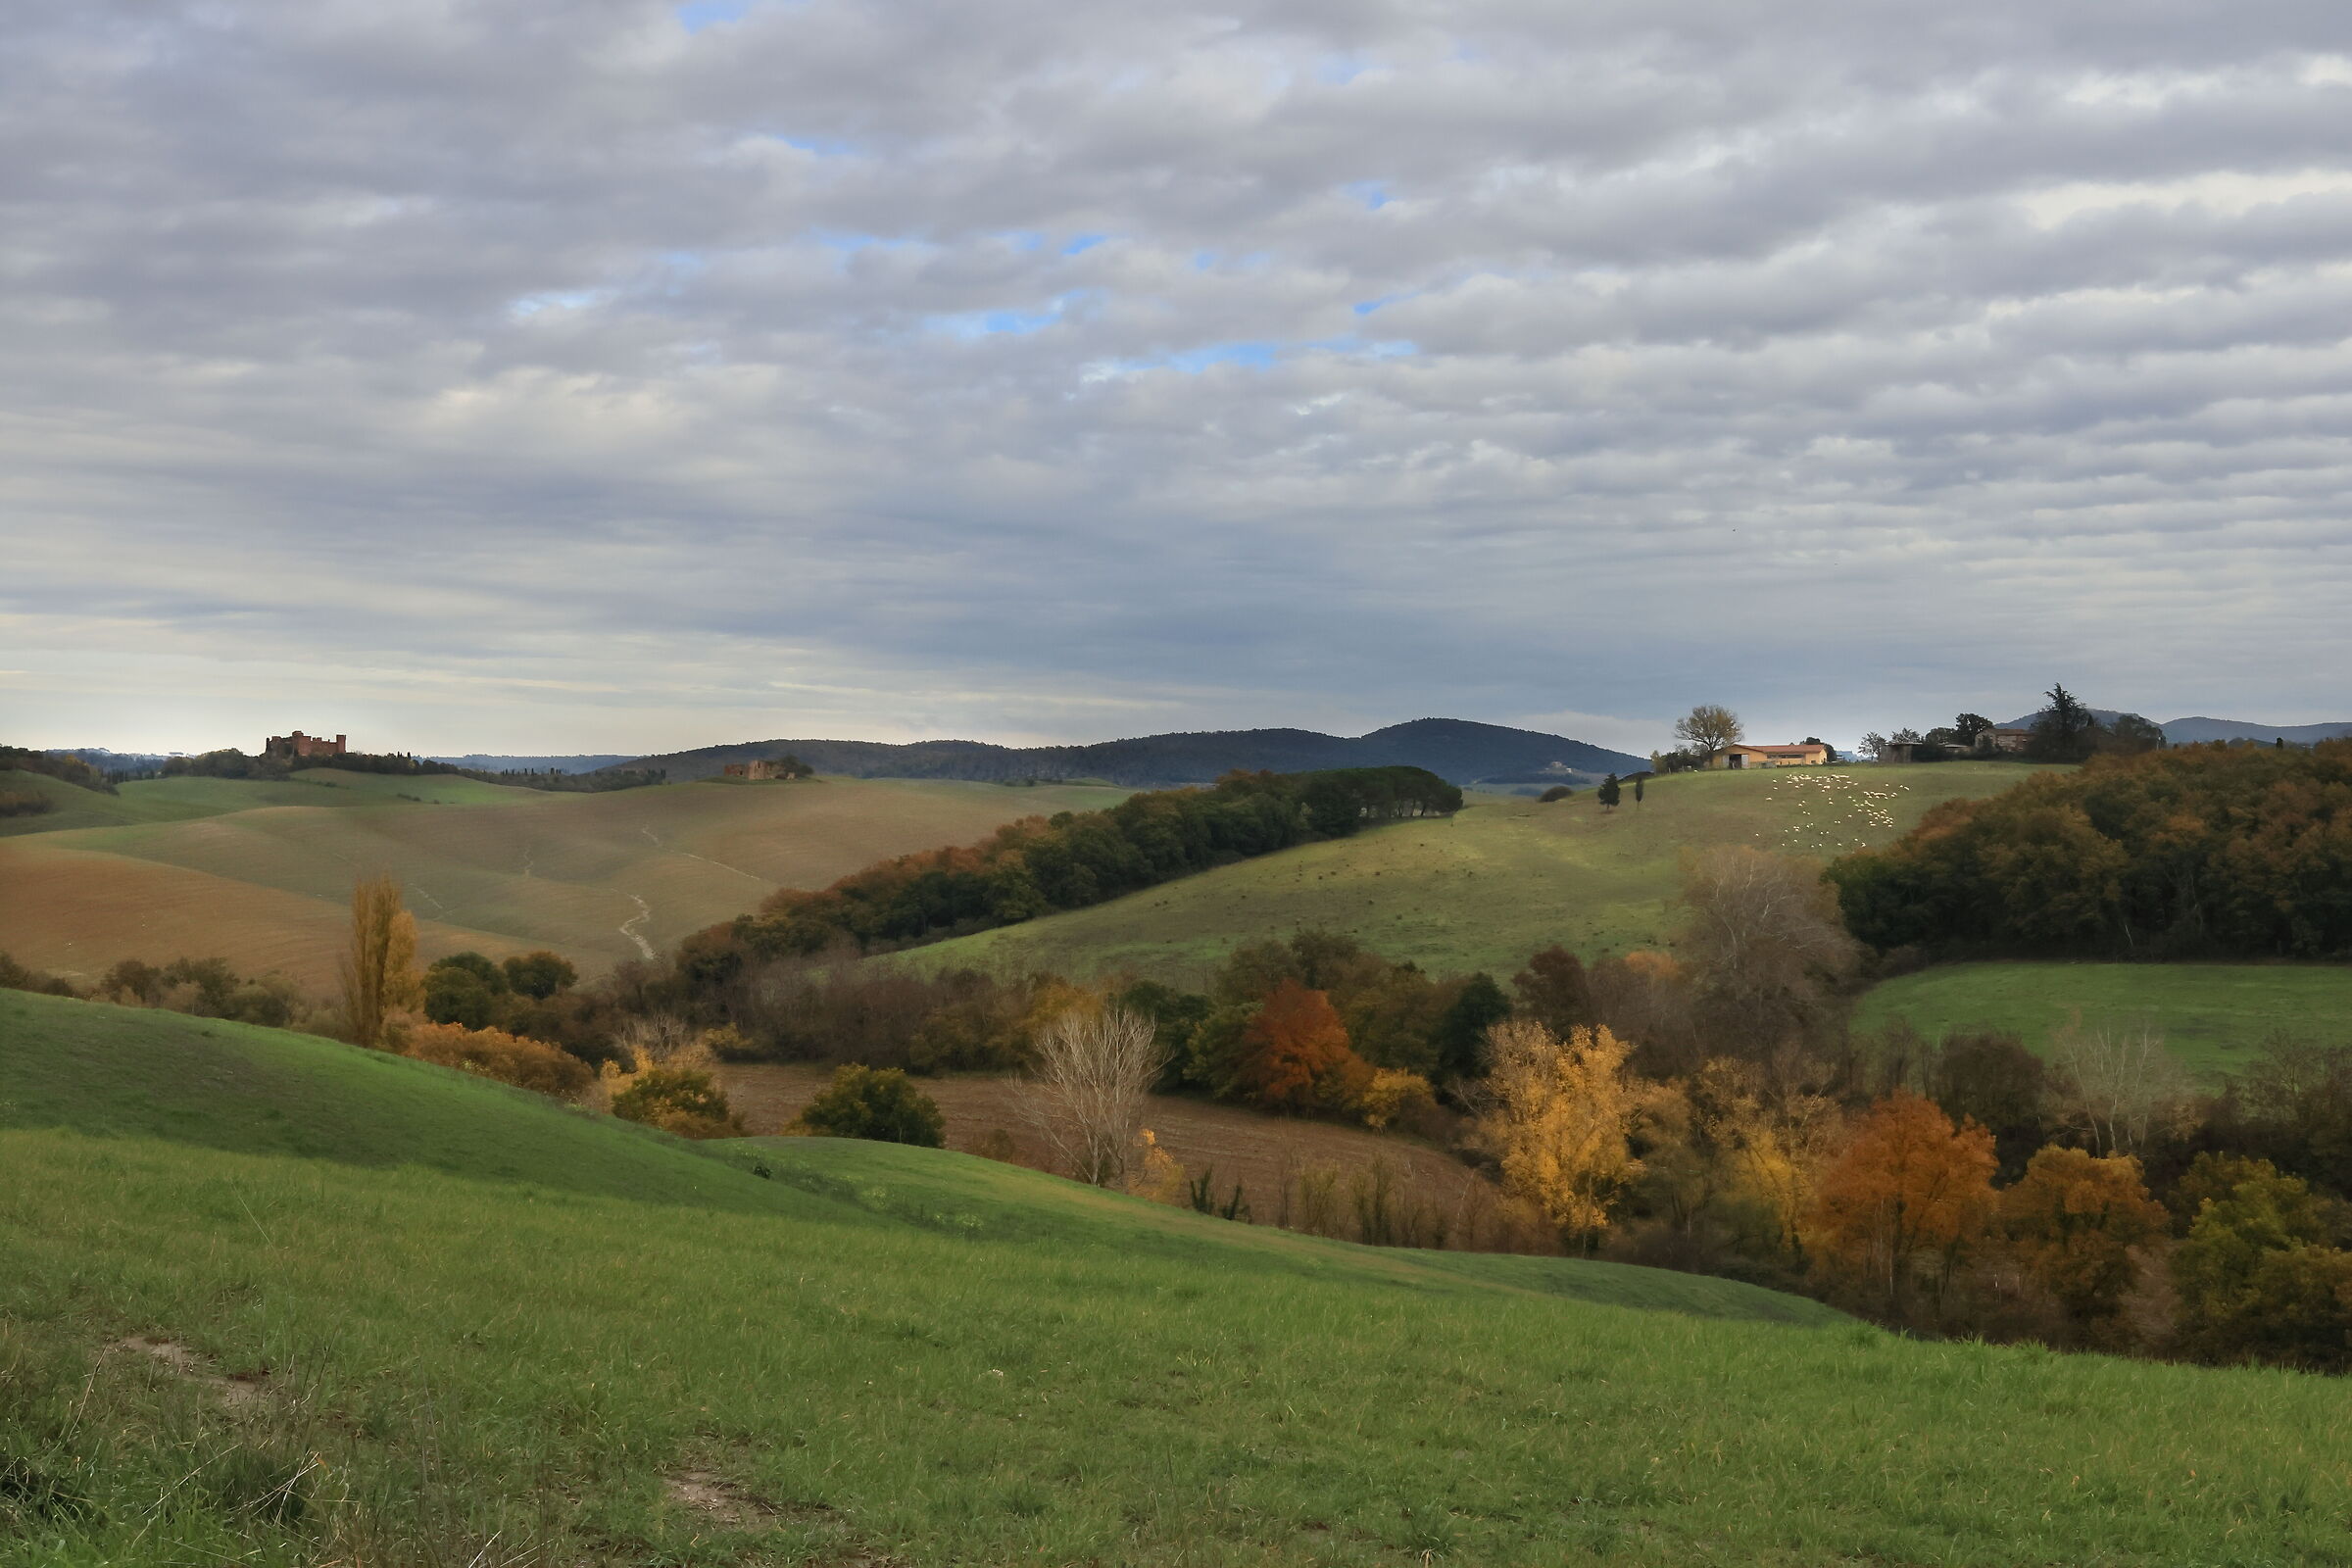 Val d'Arbia in autumn...